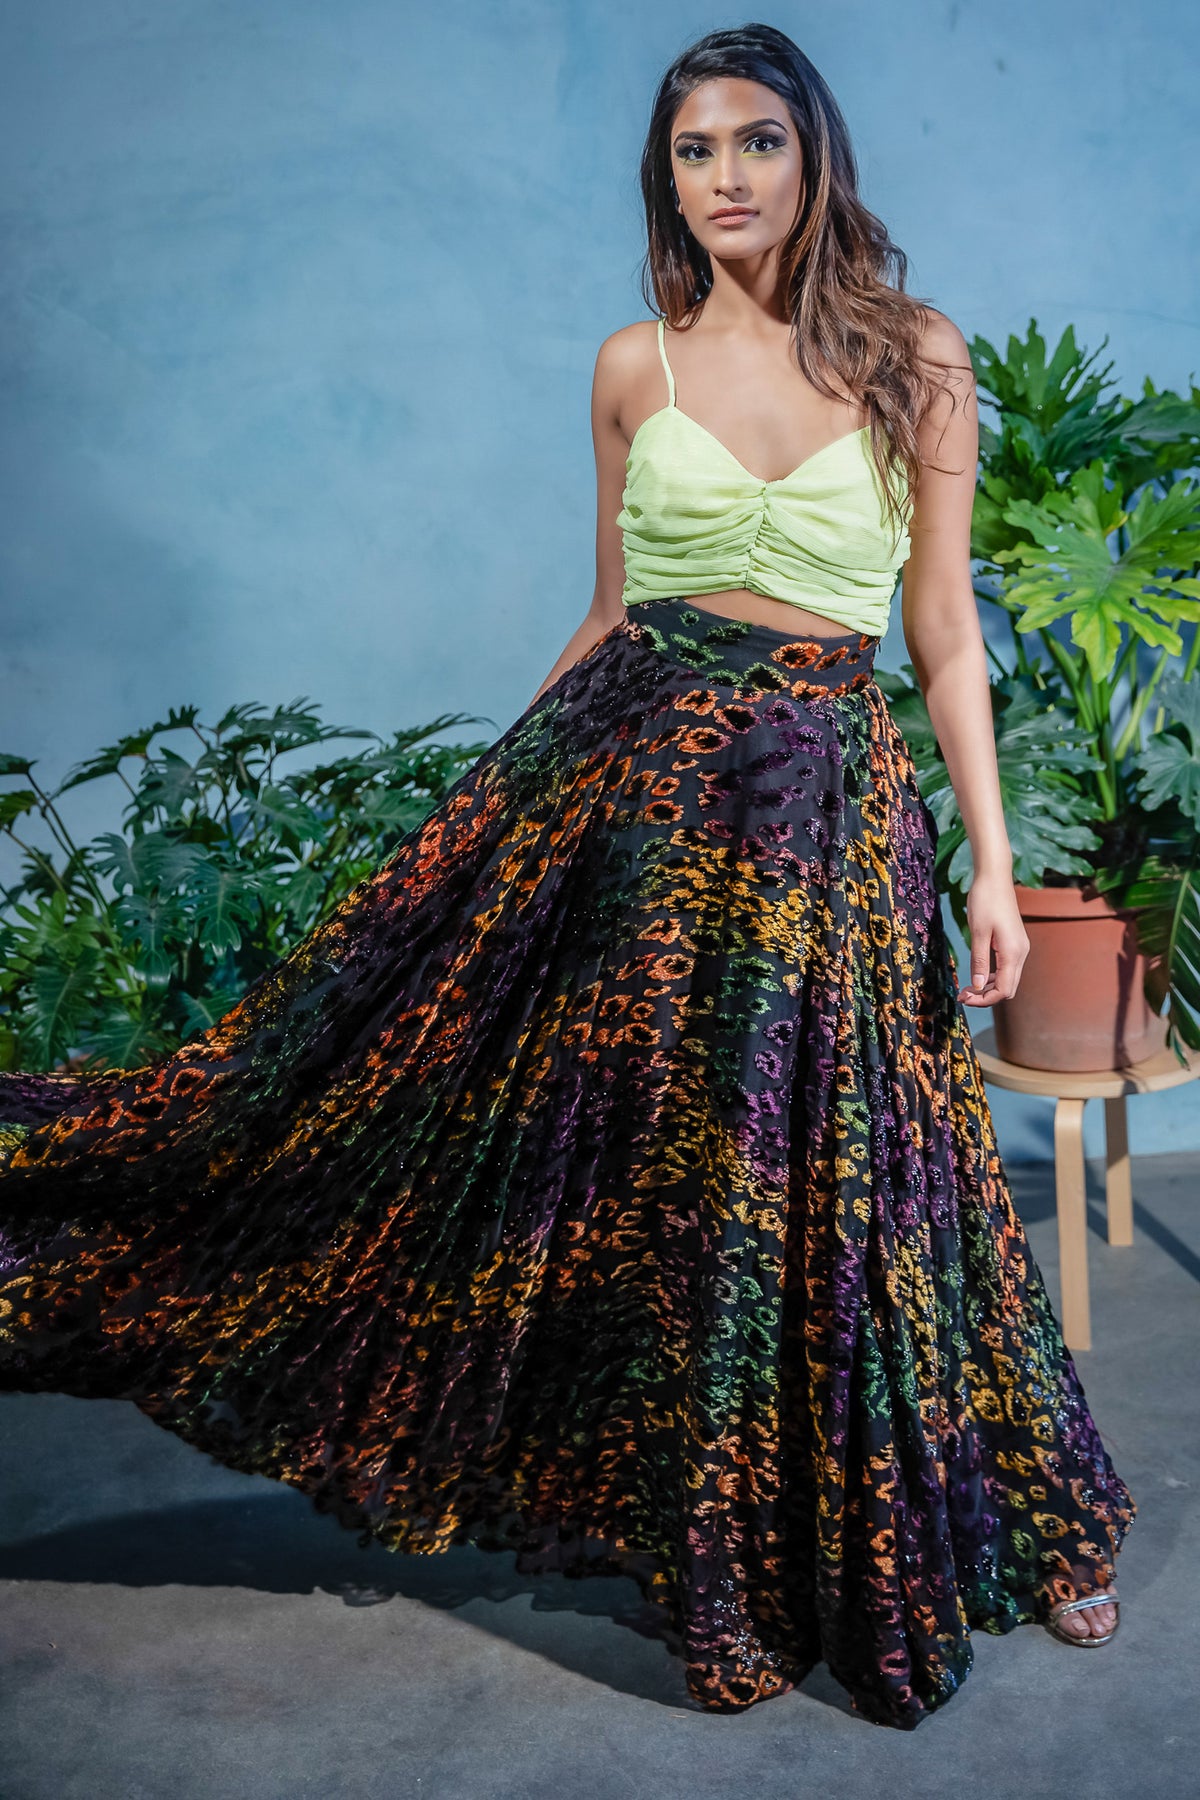 EZYA Multicolor Velvet Leopard Slit Skirt - Front View - Harleen Kaur